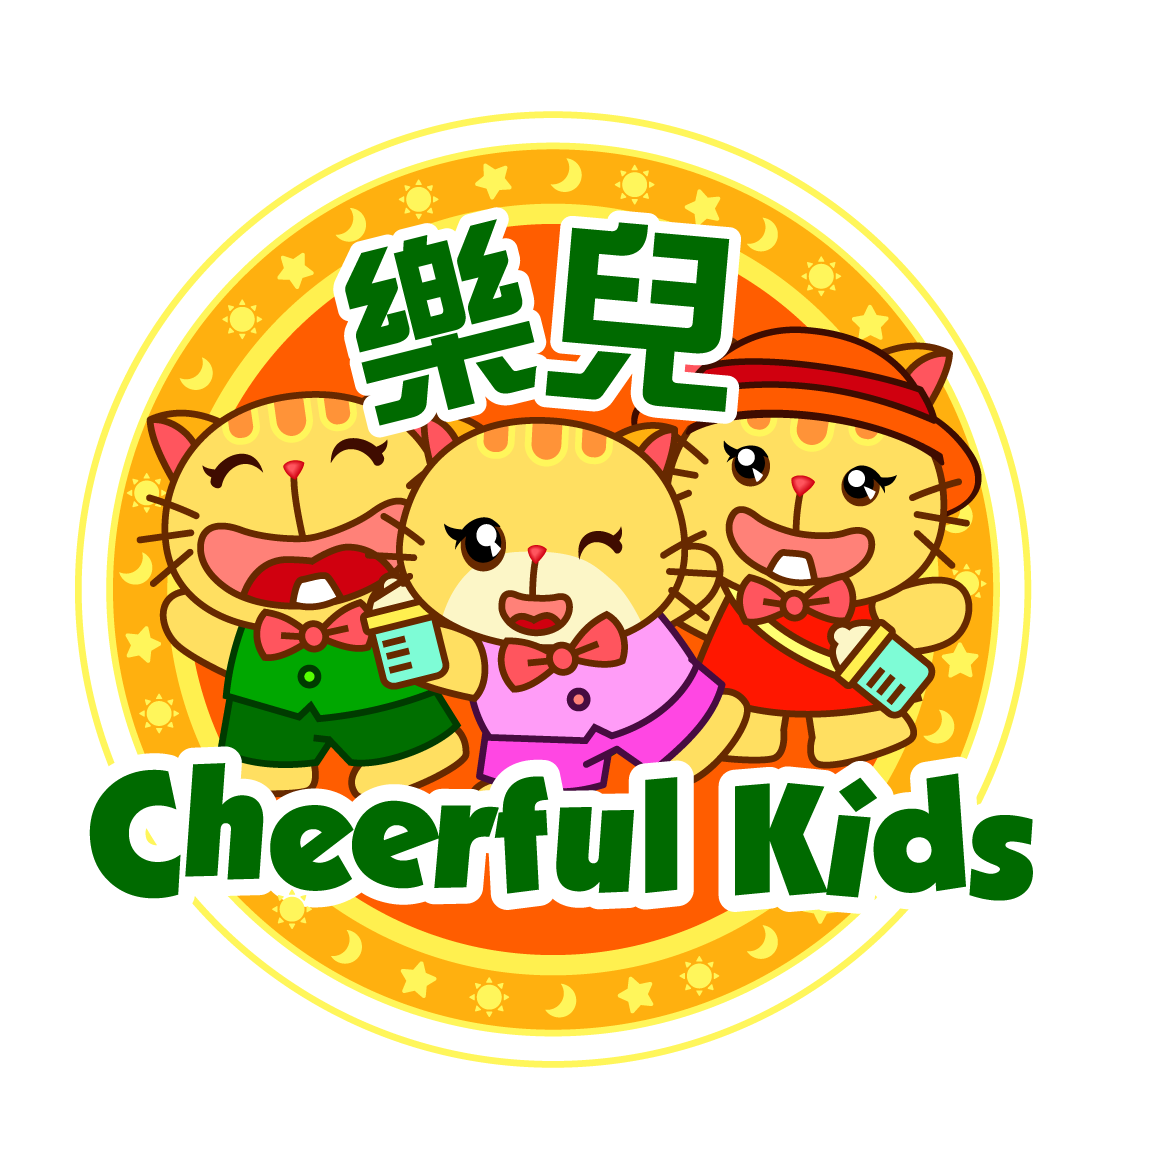 Cheerful Kids的特許經營香港區加盟店項目1